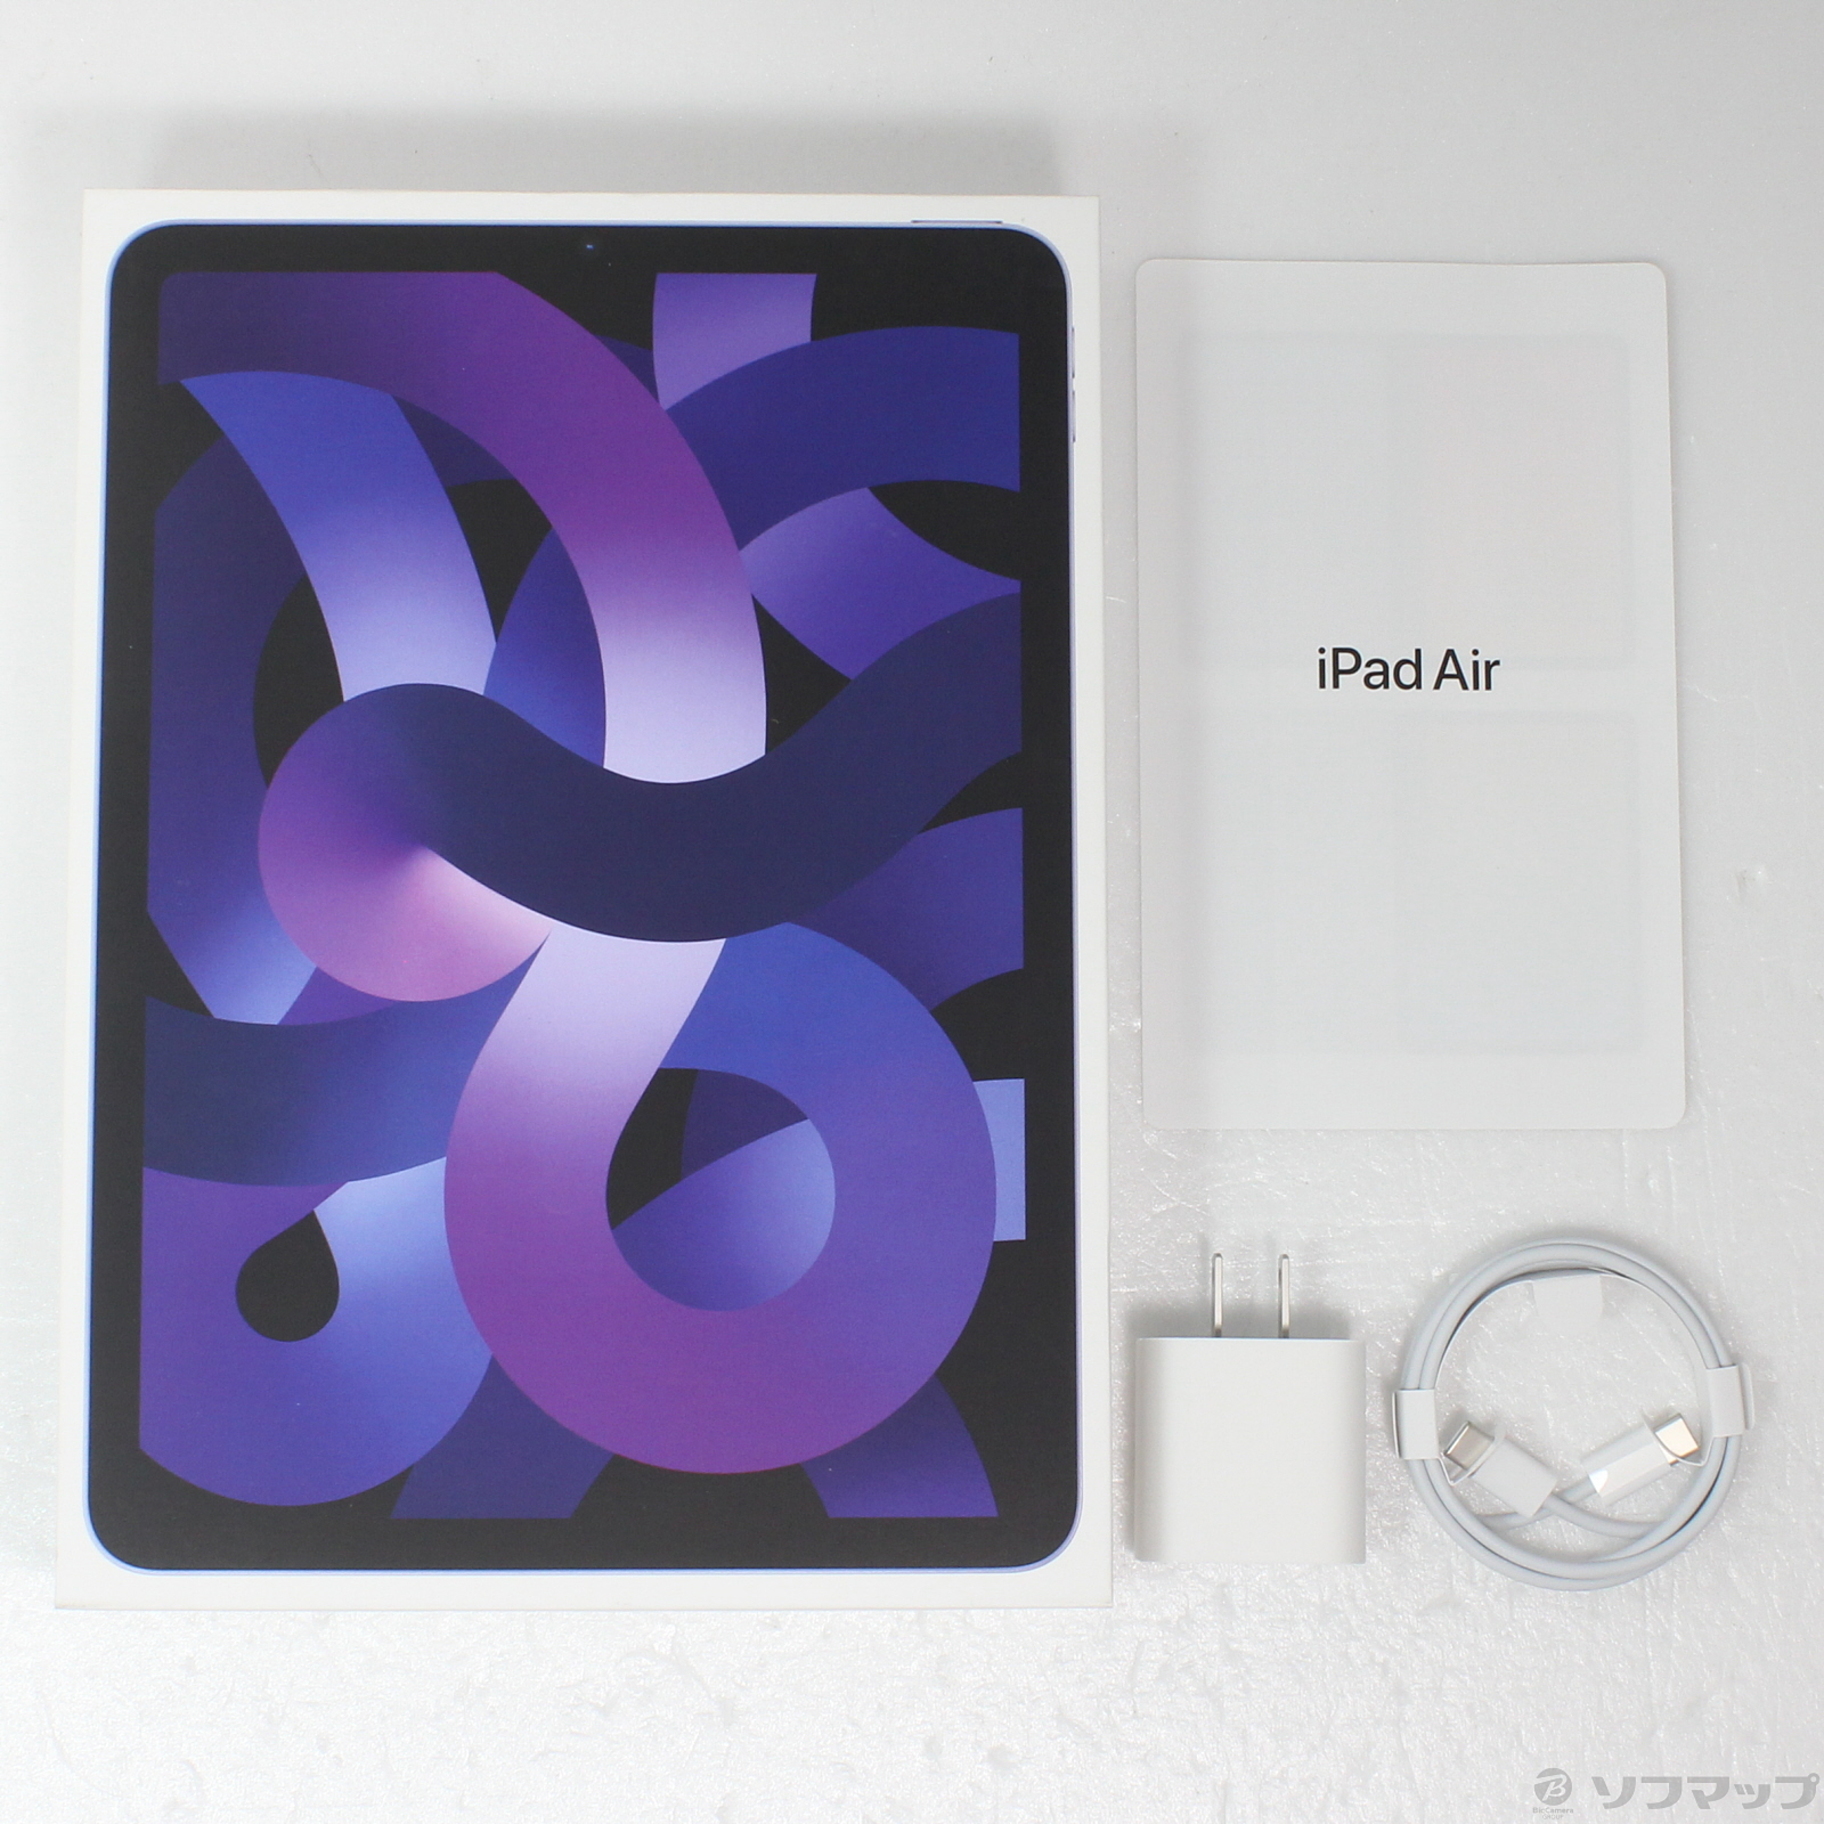 コンプアップル iPad Air 第5世代 WiFi 256GB ブルー 新品未開封 タブレット